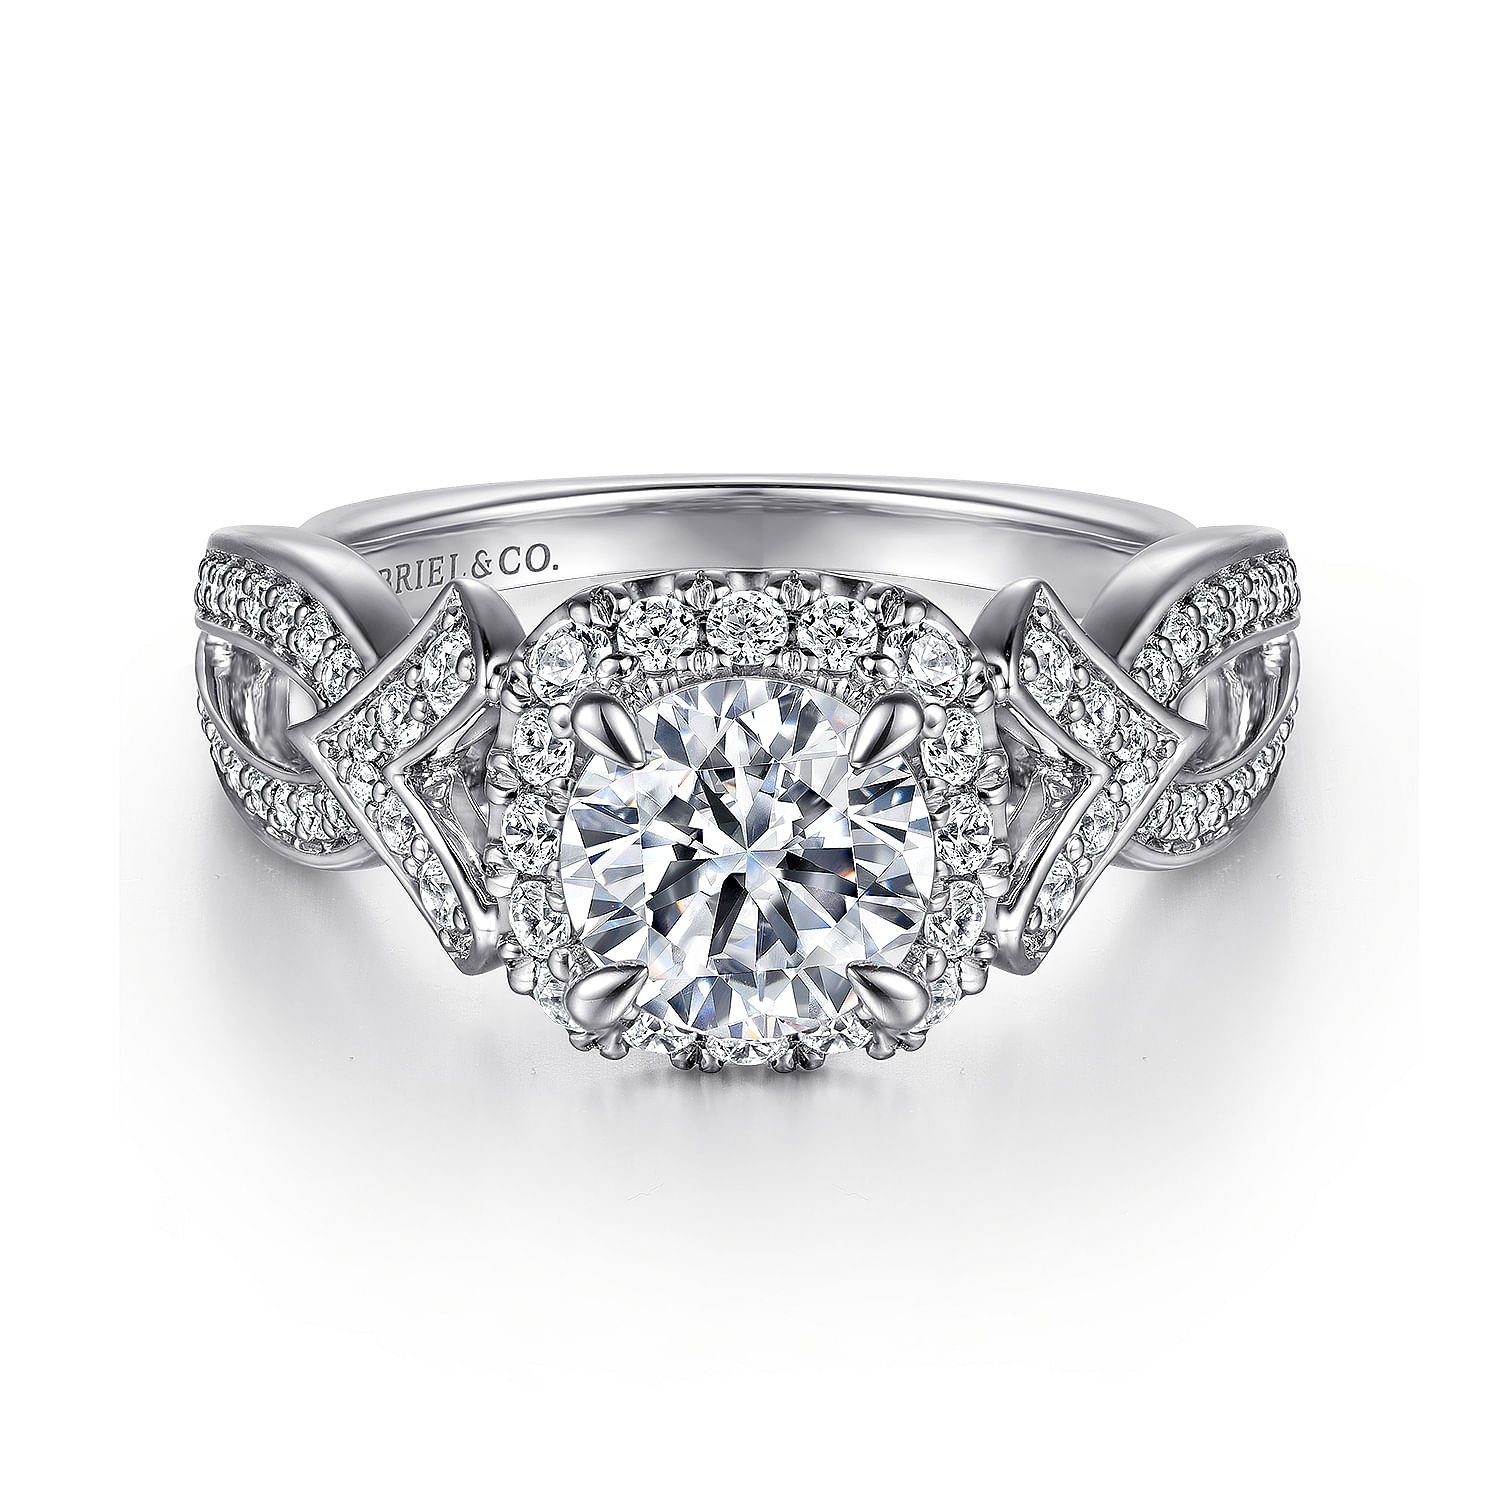 Ensley---Art-Deco-Inspired-14K-White-Gold-Halo-Diamond-Engagement-Ring1